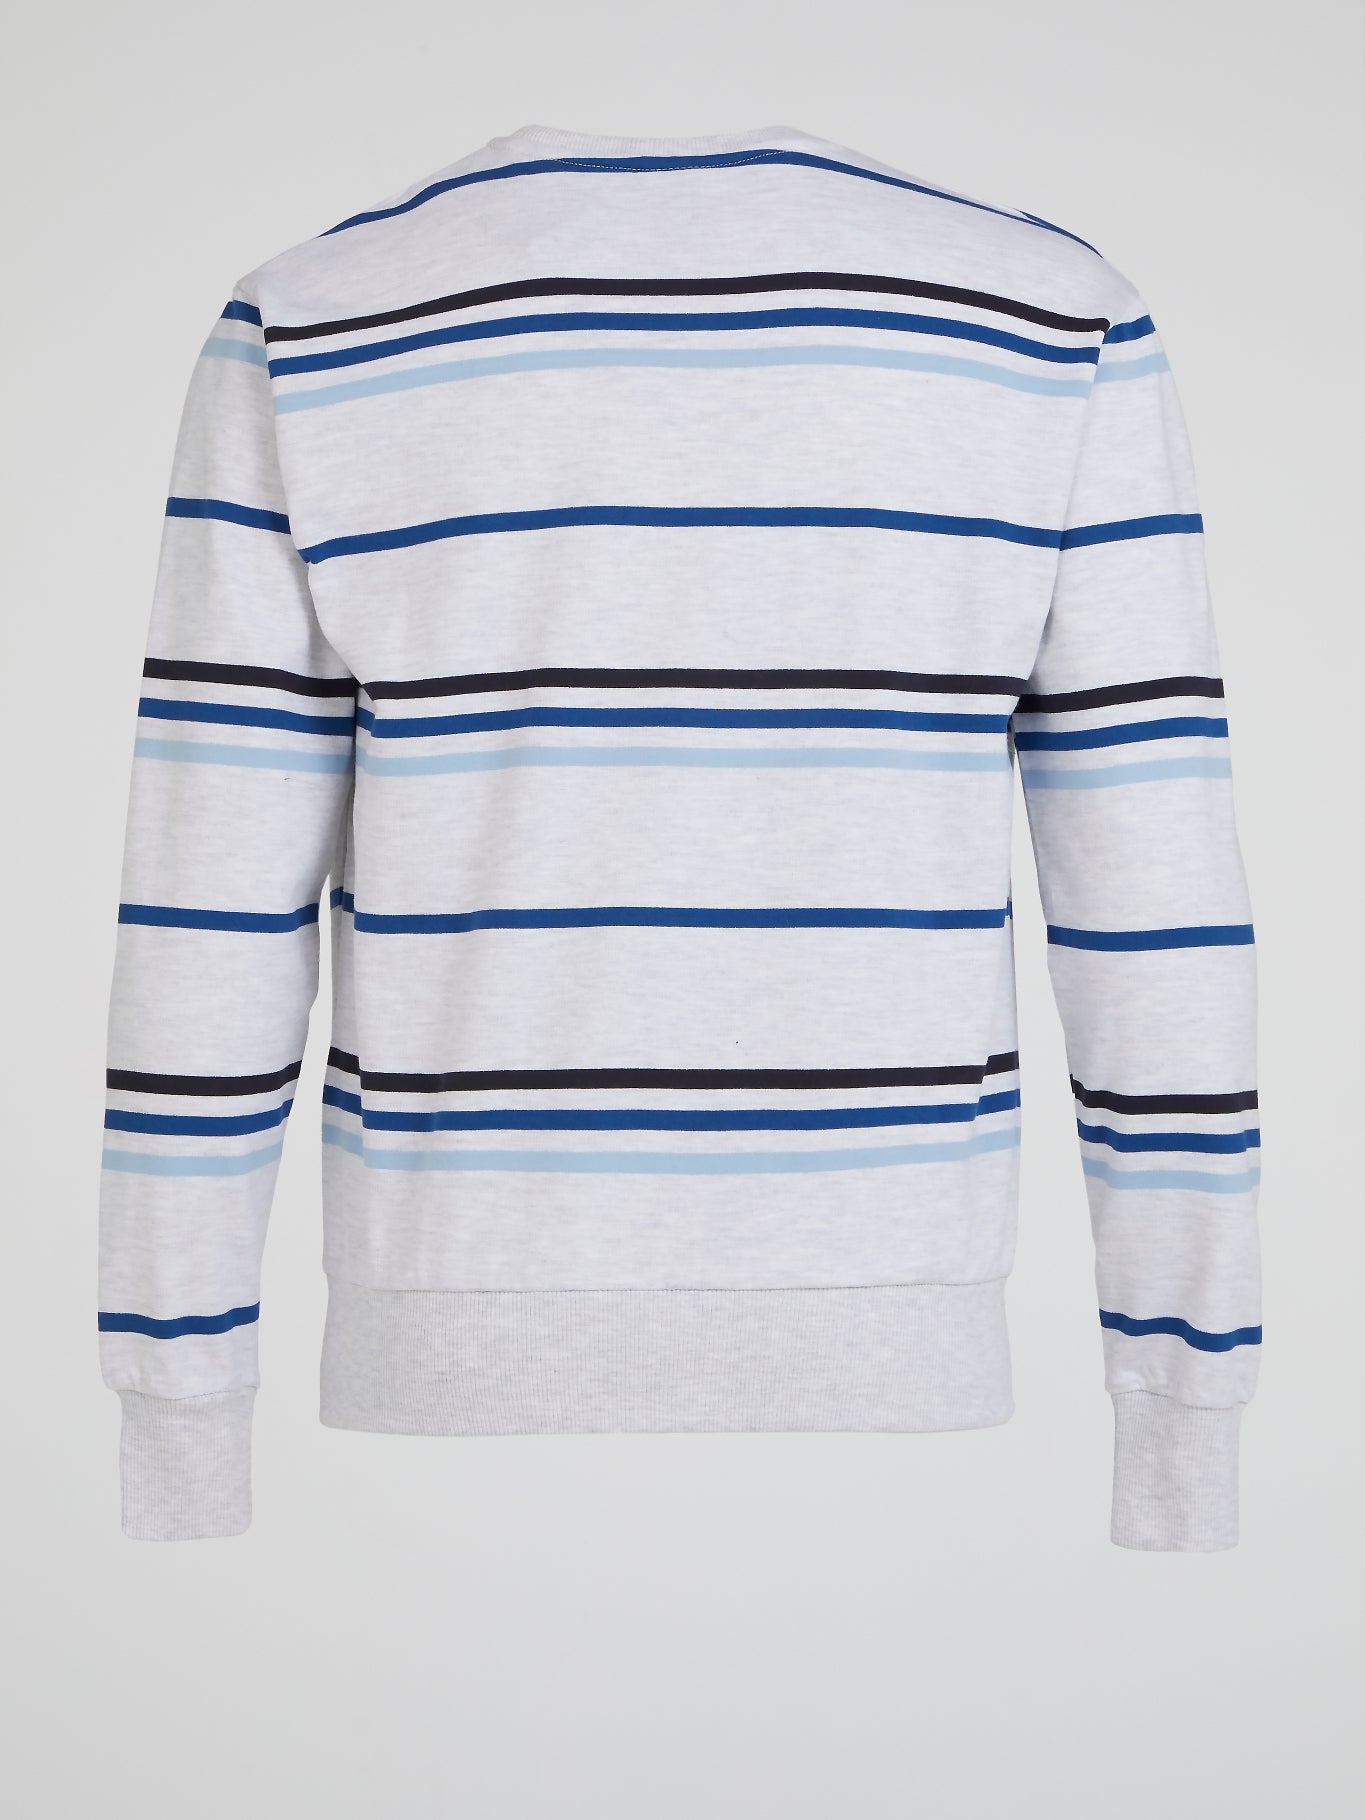 Pirozzo White Striped Sweatshirt